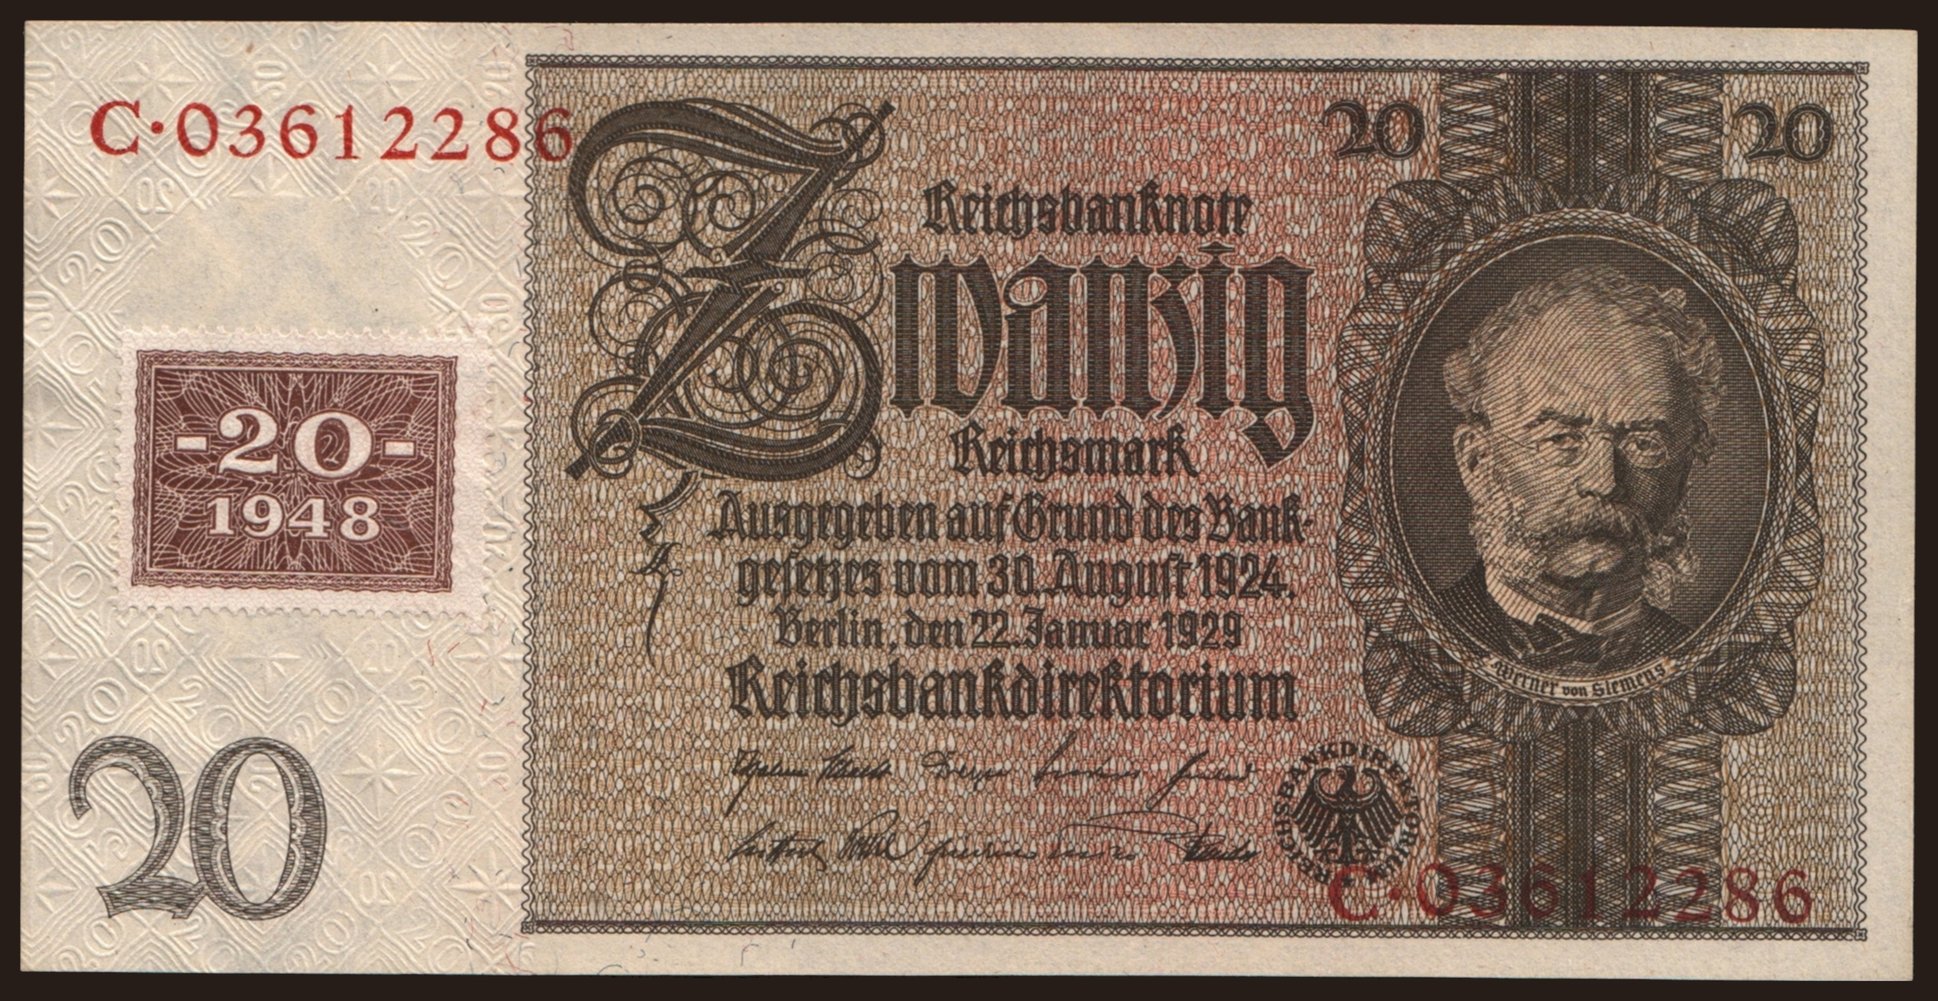 20 Reichsmark, 1929(48)